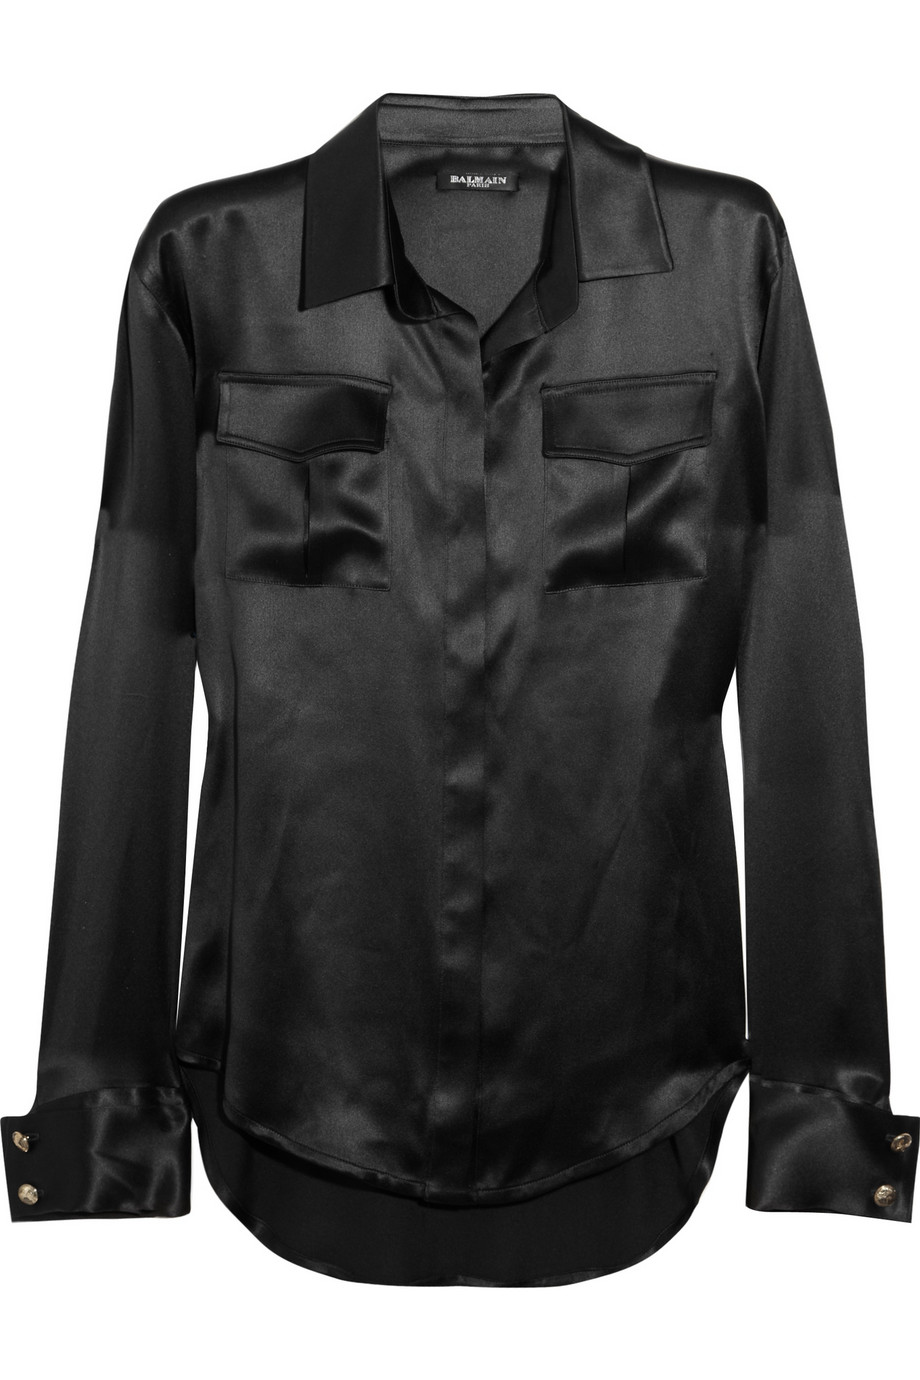 Balmain Silksatin Shirt in Black | Lyst